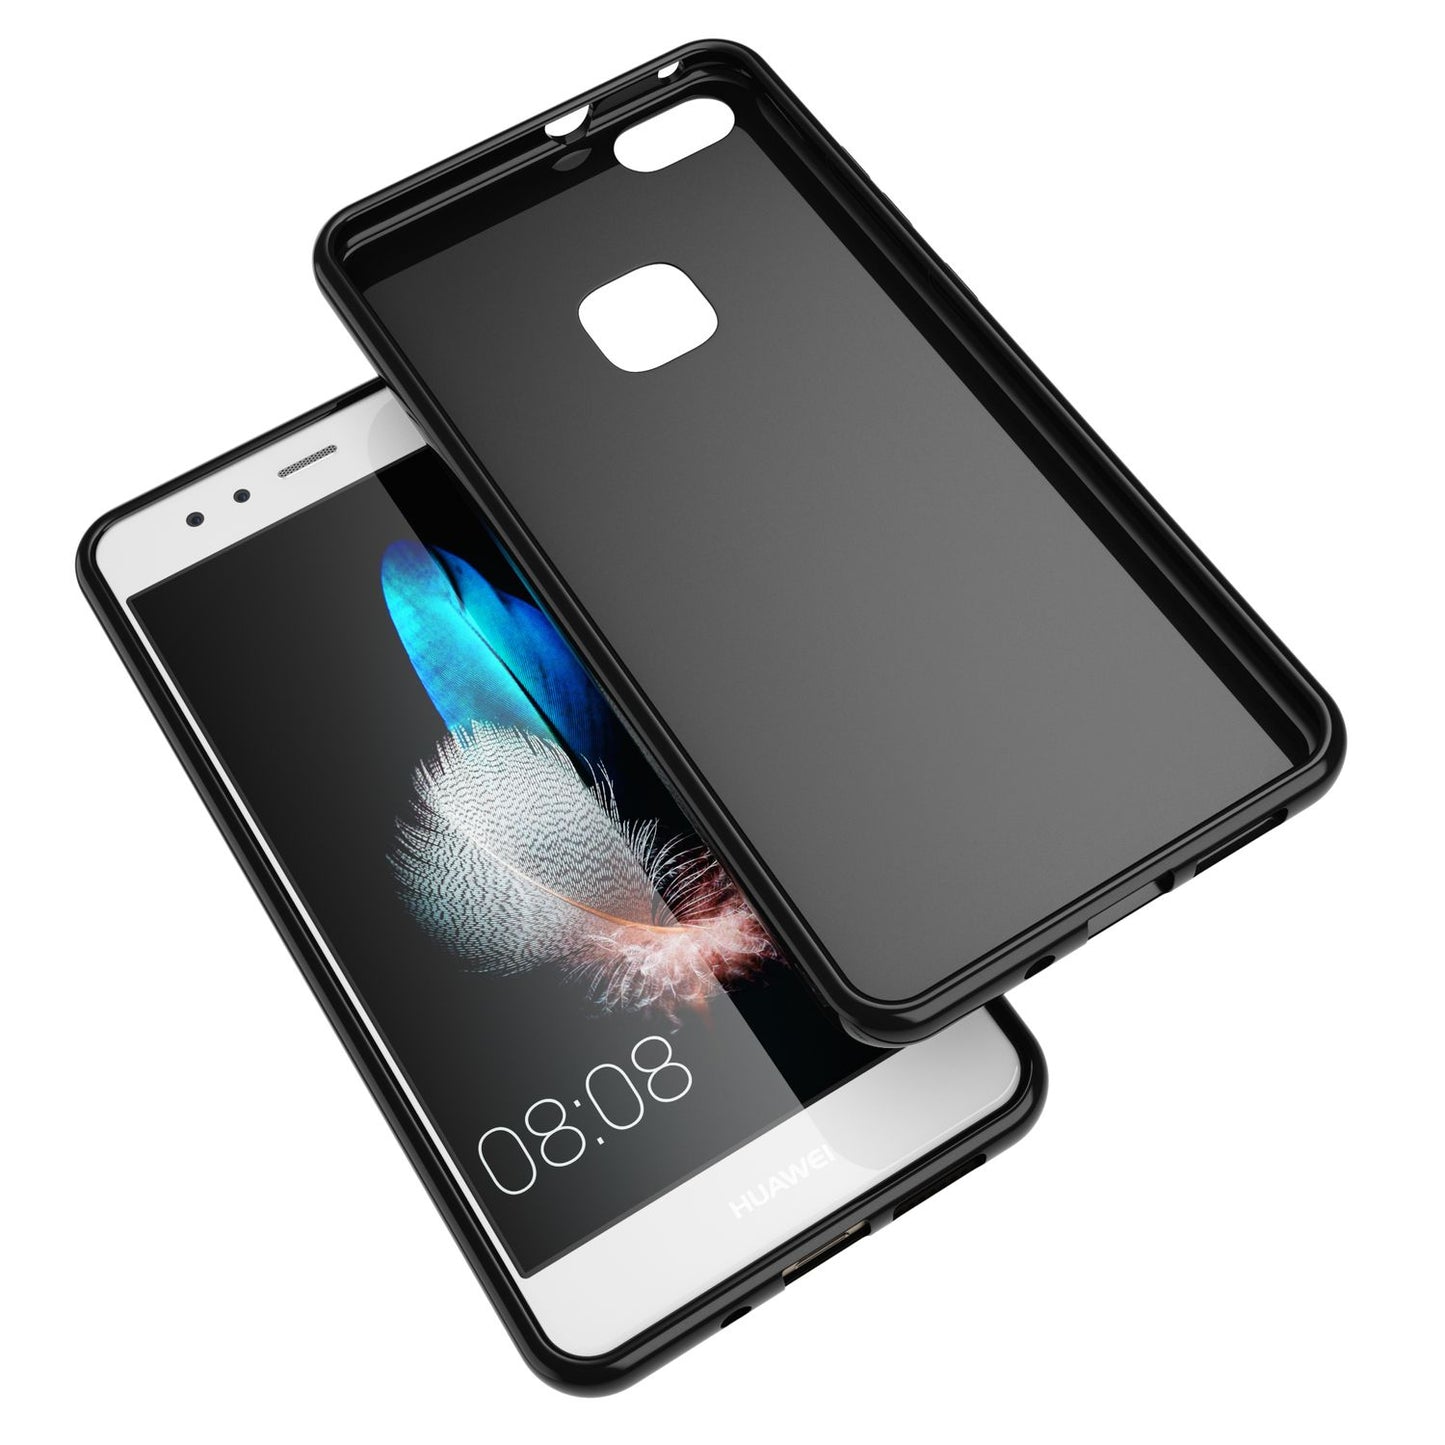 Huawei P10 Lite Handy Hülle von NALIA, TPU Silikon Cover Case Schutz Handy Tasche